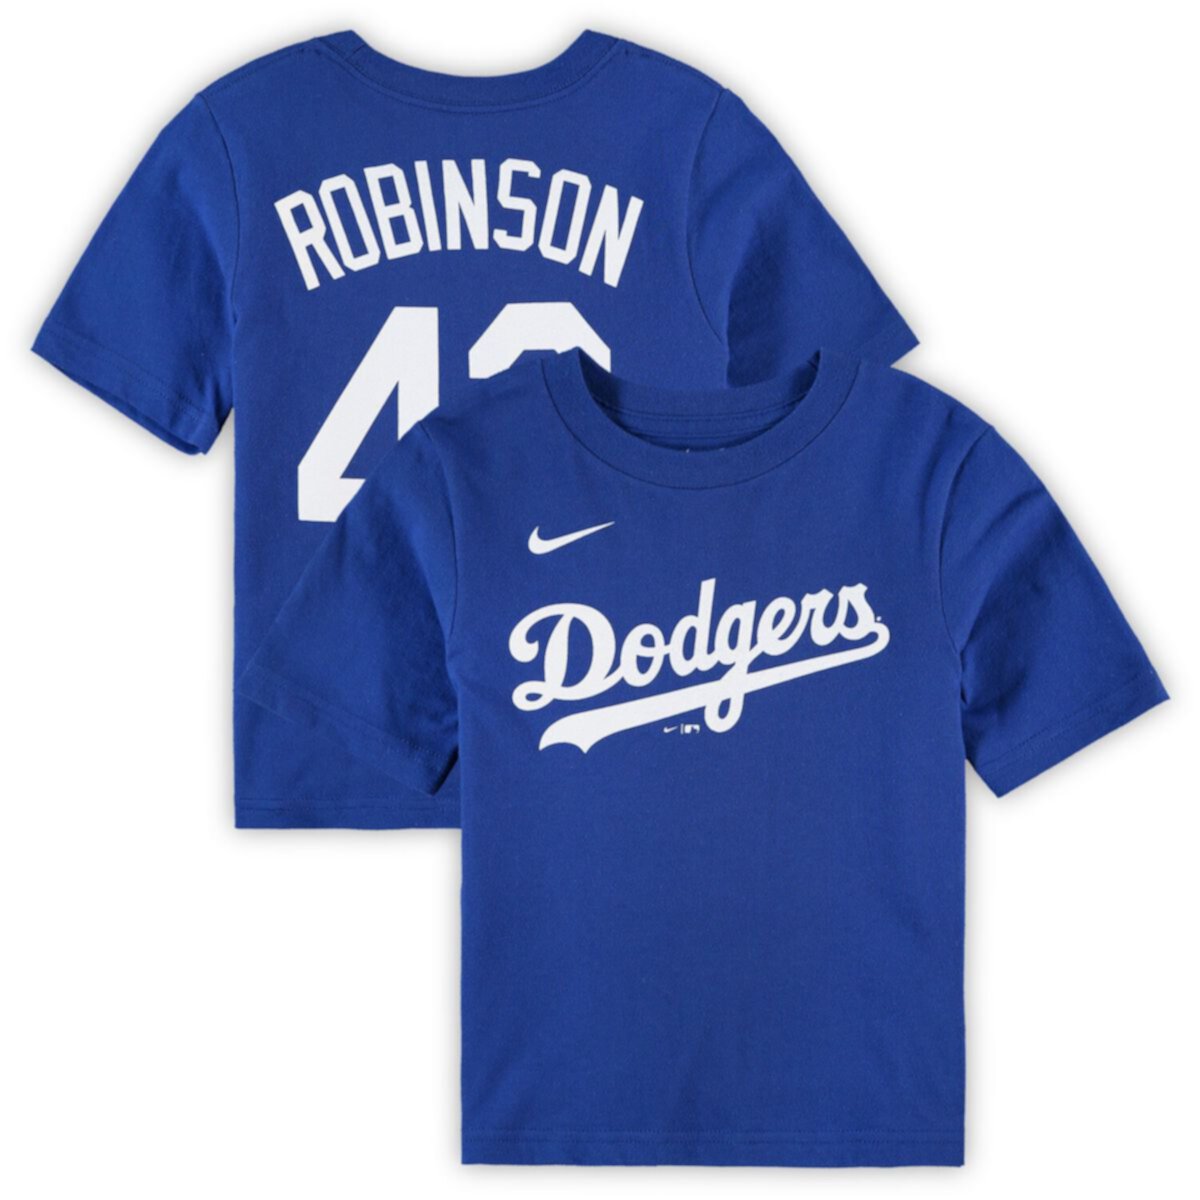 Футболка дошкольного возраста Nike Jackie Robinson Royal Los Angeles Dodgers с именем и номером игрока Nike